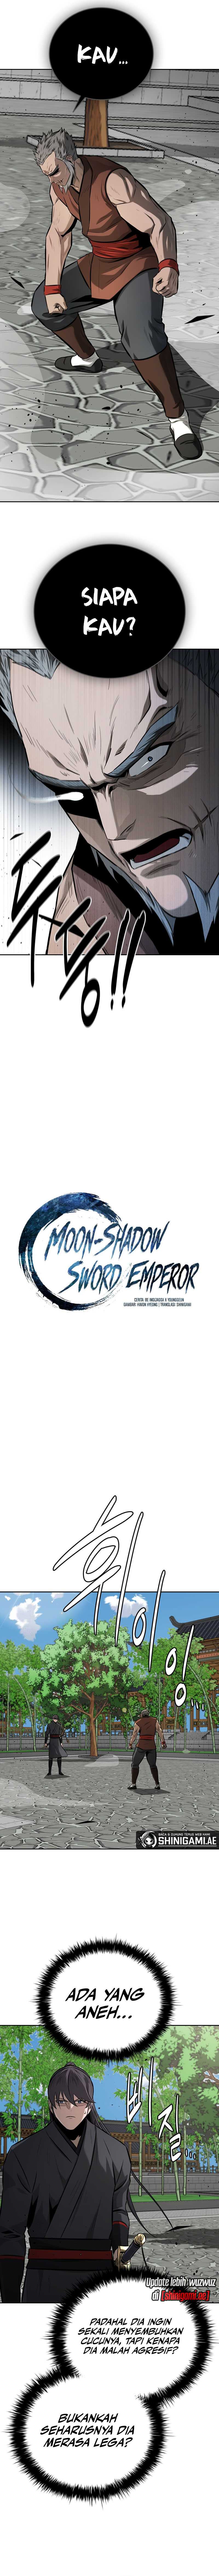 Moon-Shadow Sword Emperor Chapter 63